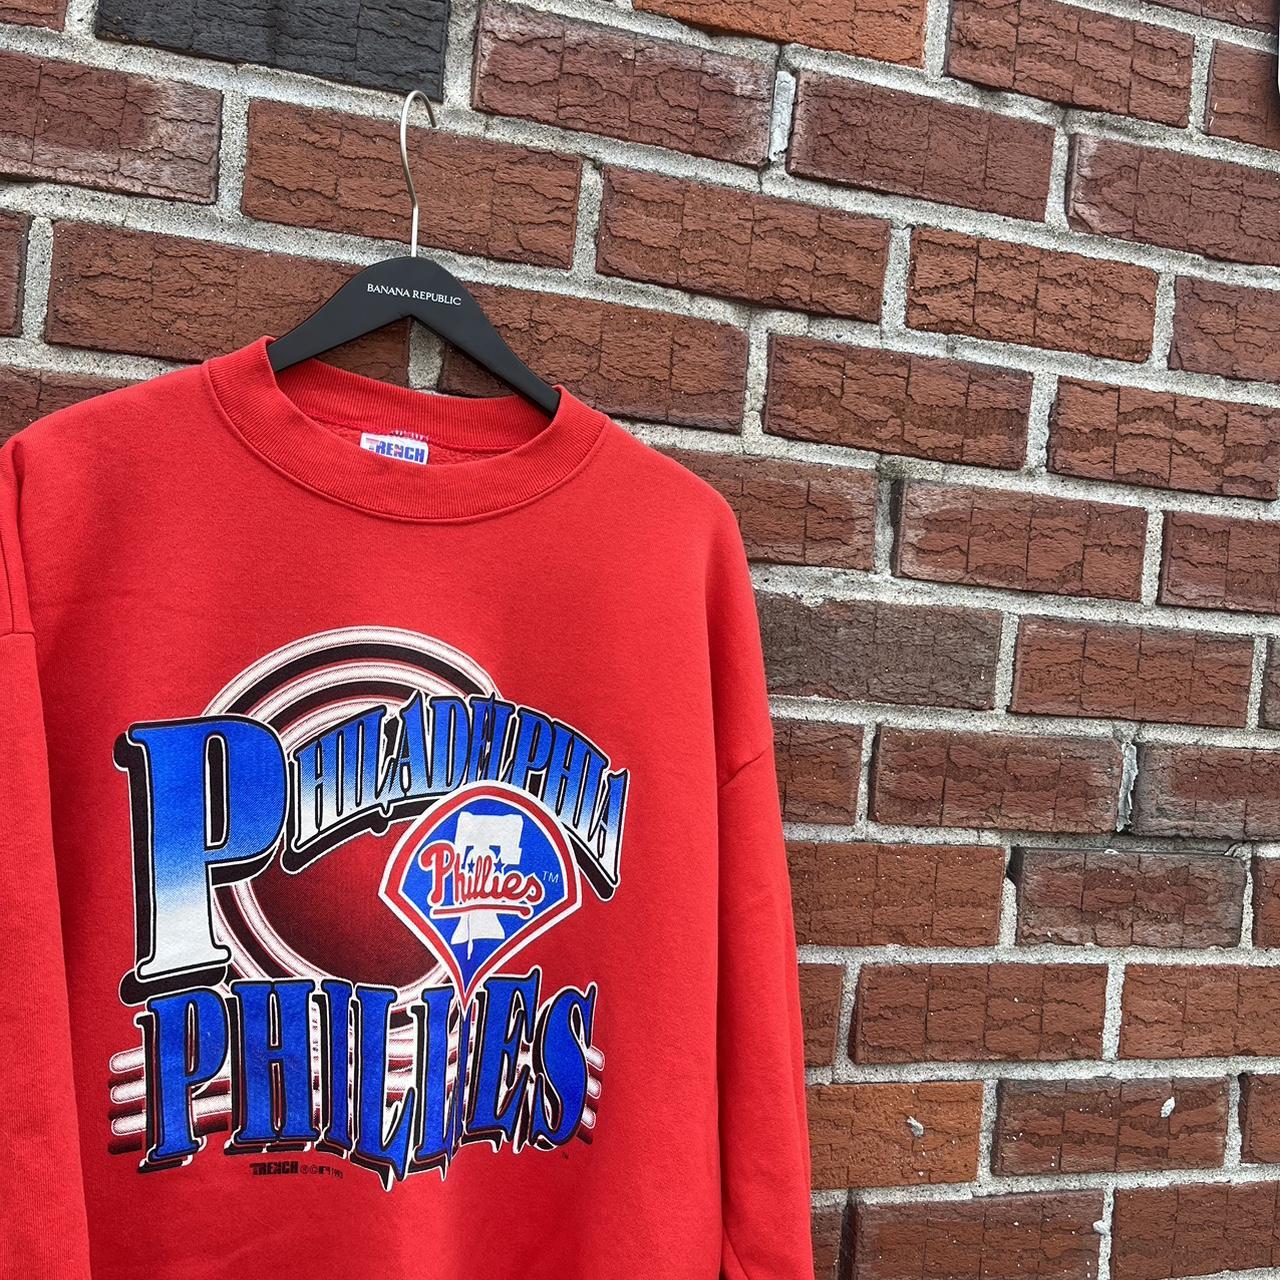 Vintage MLB (Trench) - Philadelphia Phillies Crew Neck Sweatshirt